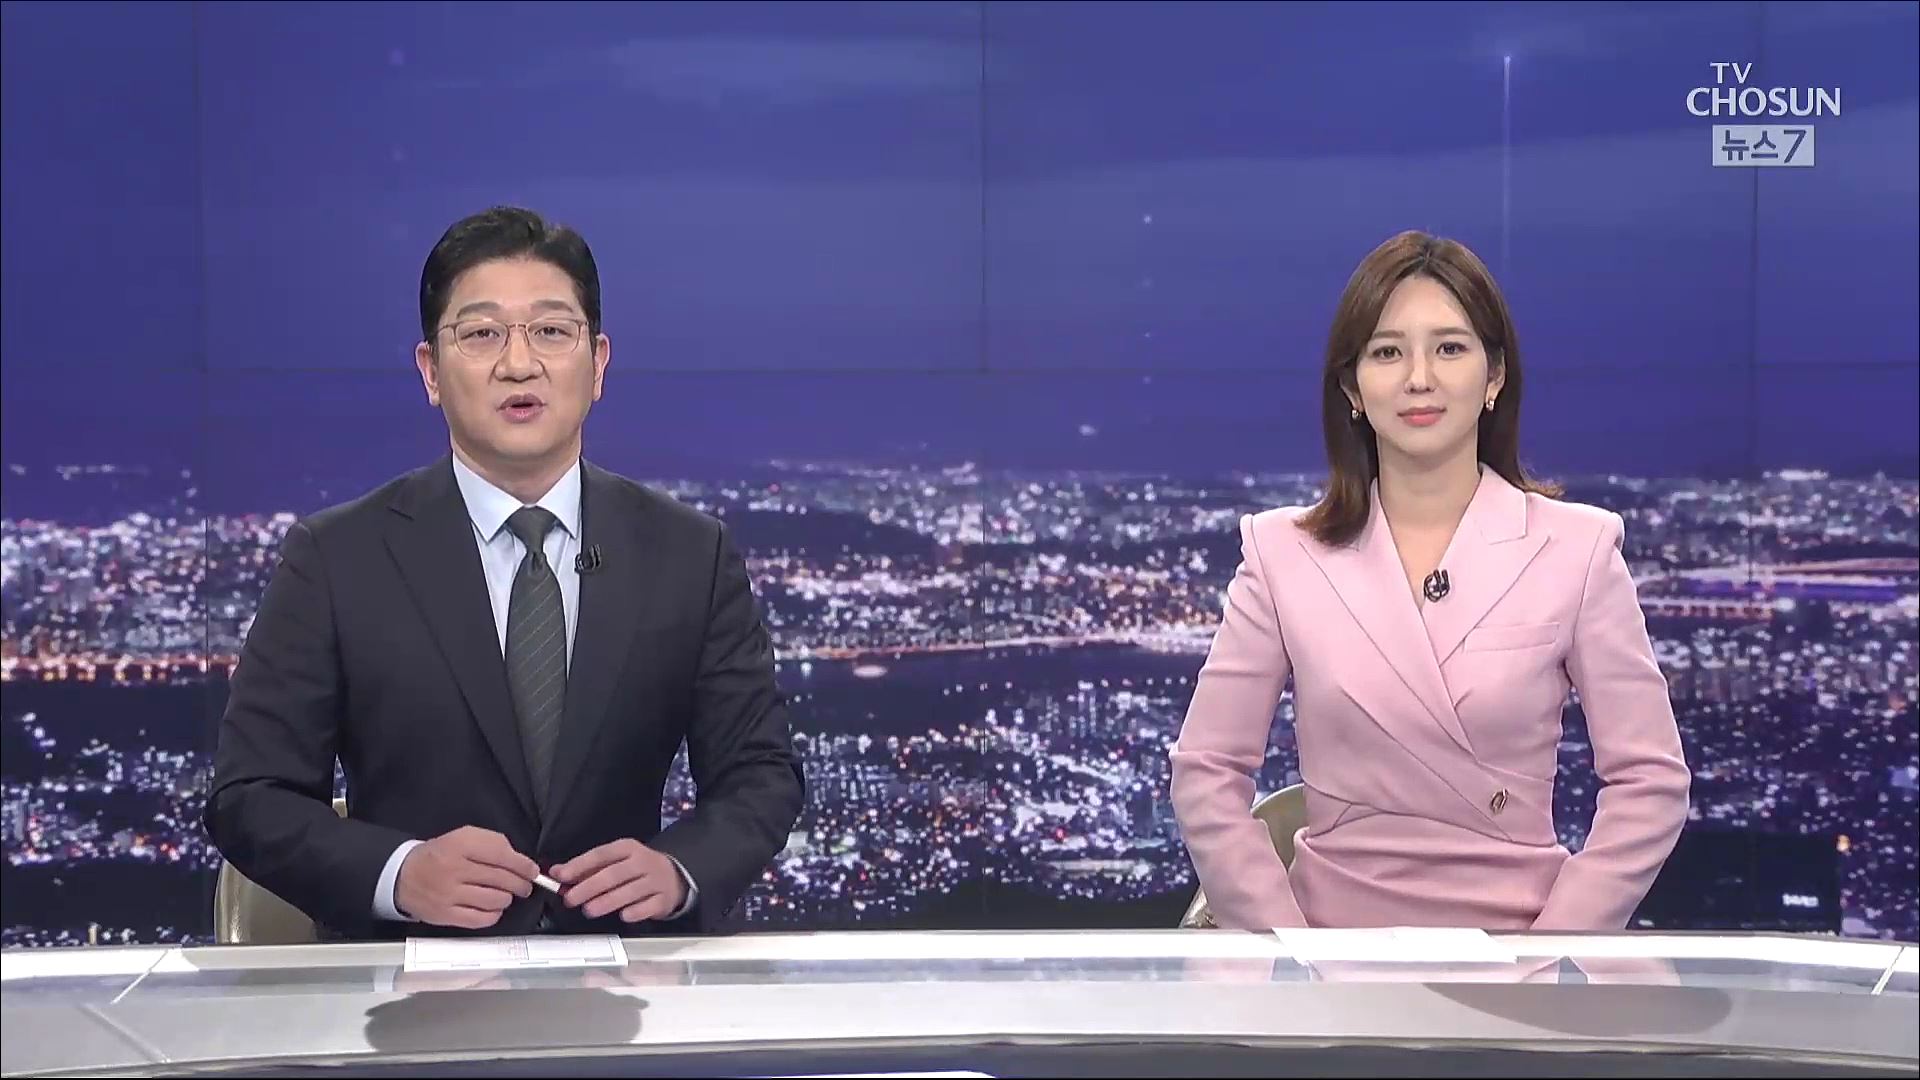 6월 3일 '뉴스 7' 클로징